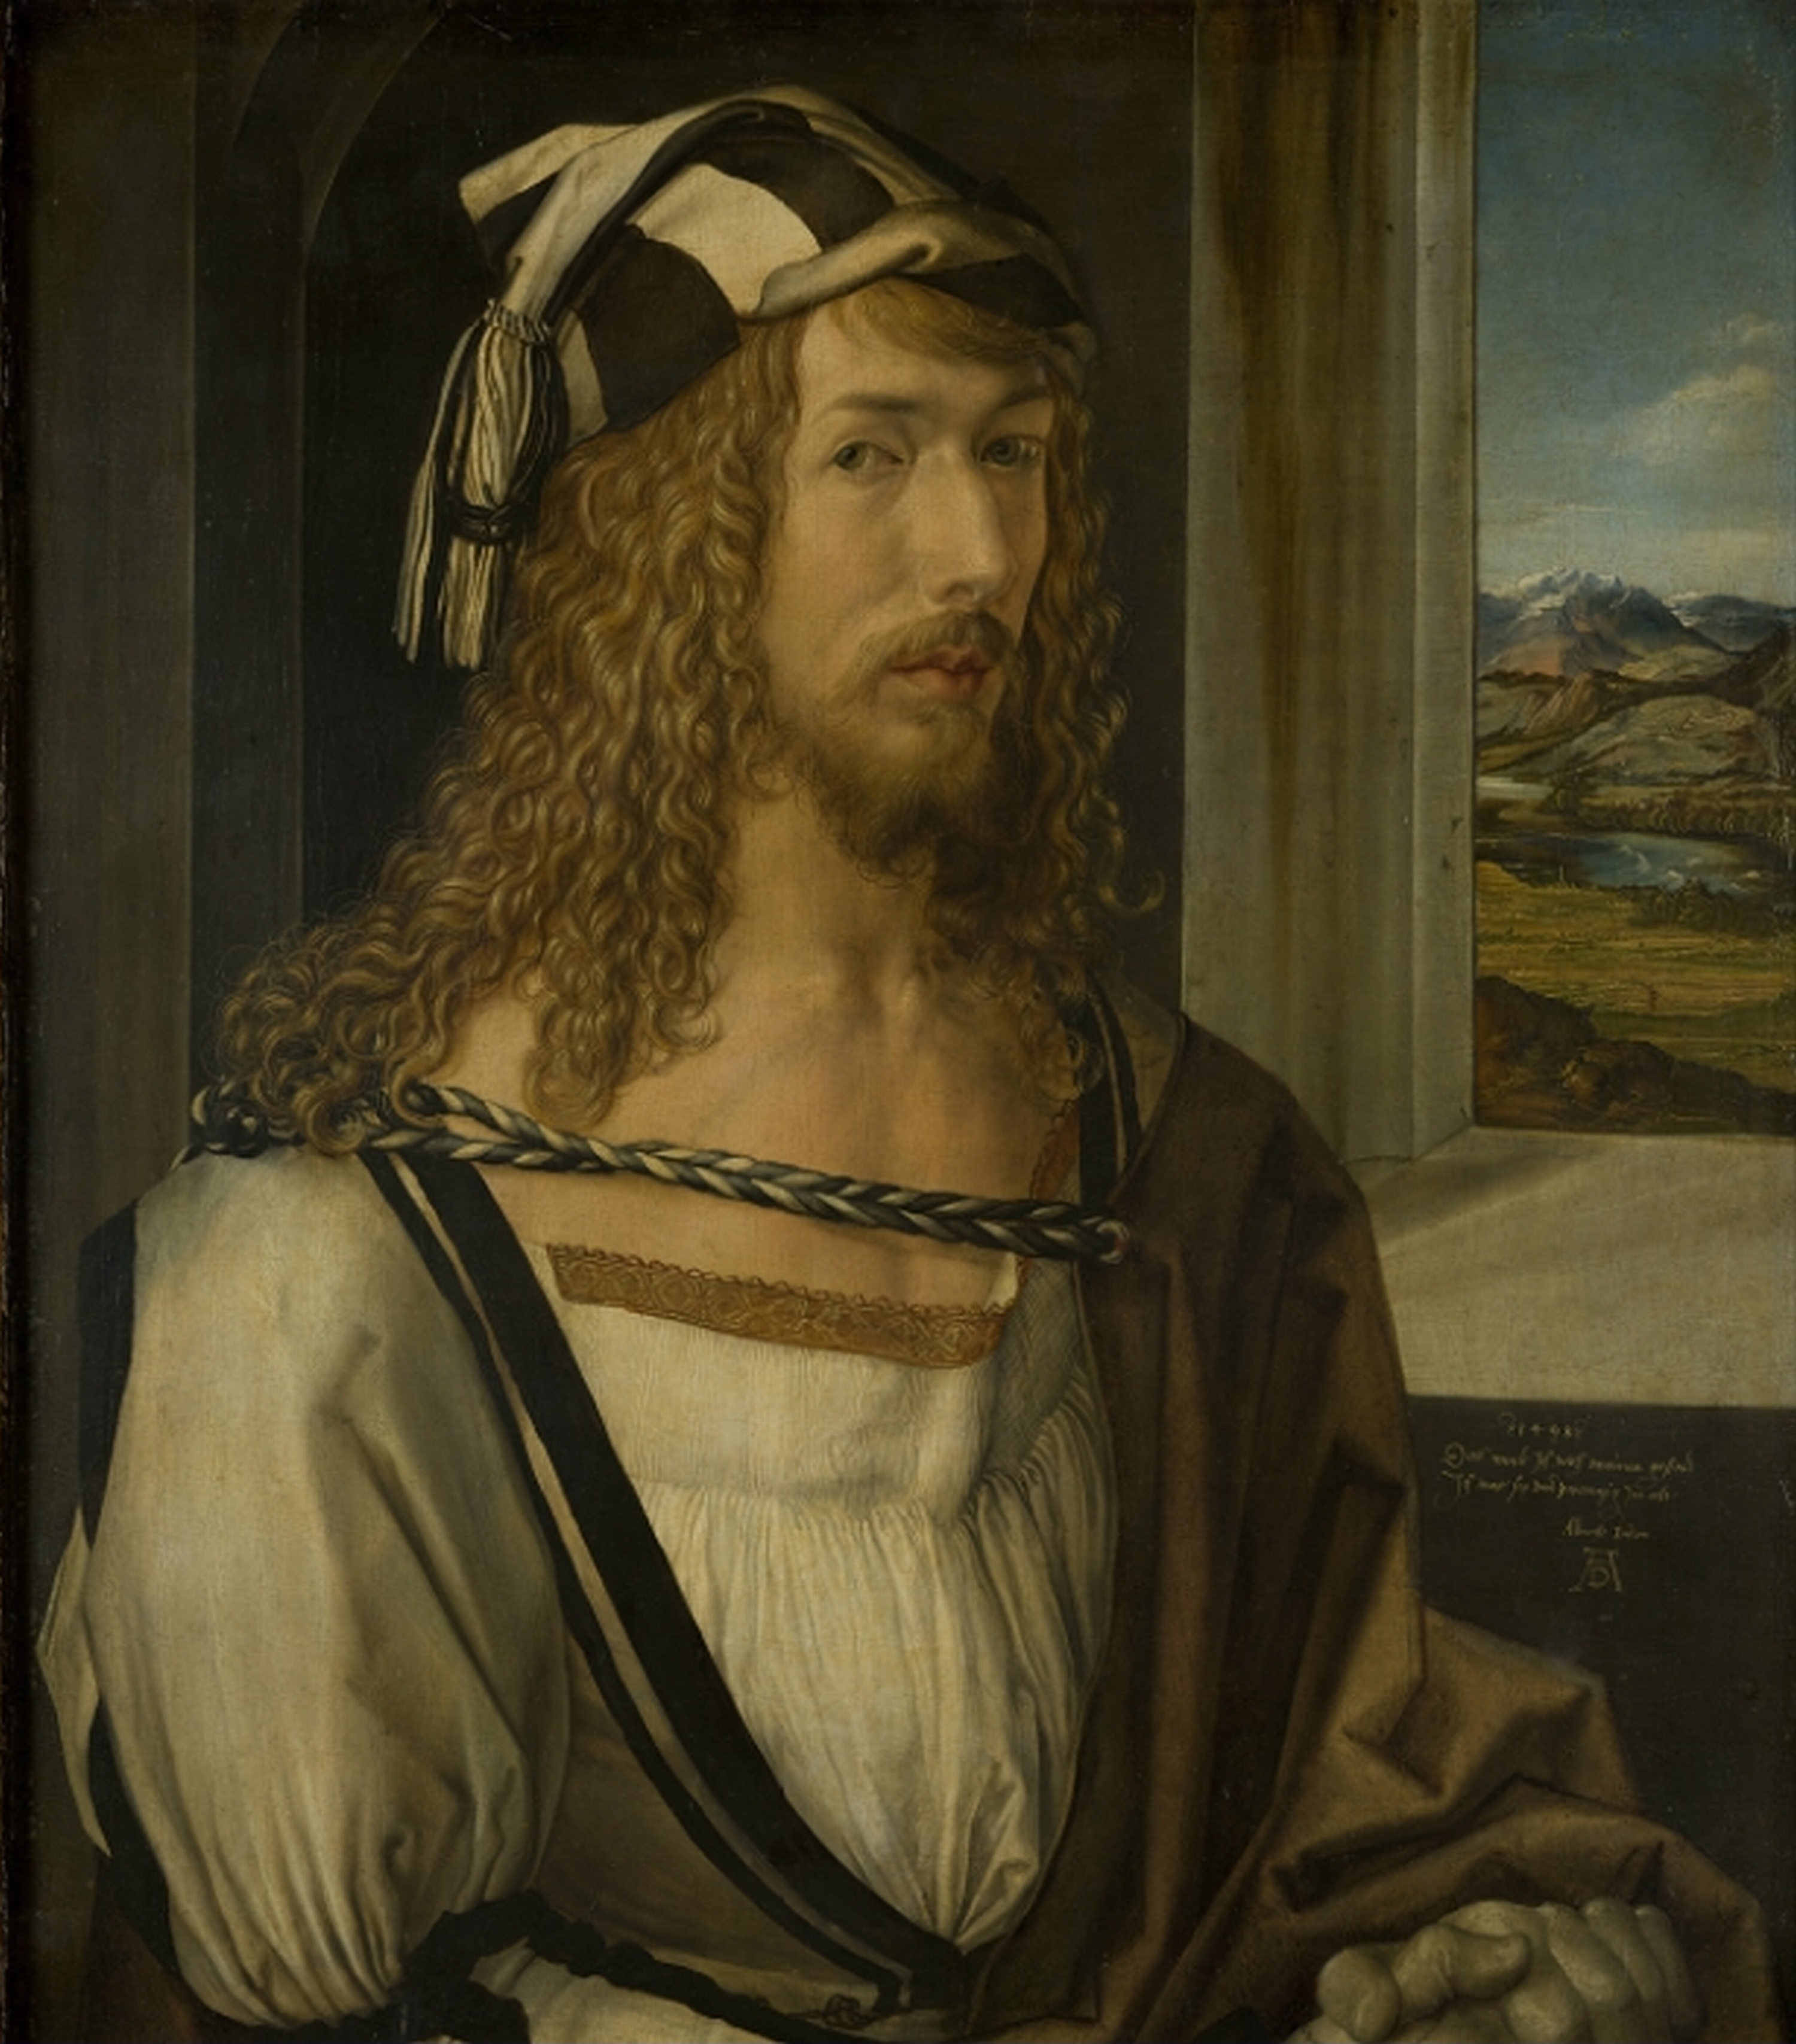 Albrecht Dürer - May 21, 1471 - April 6th, 1528